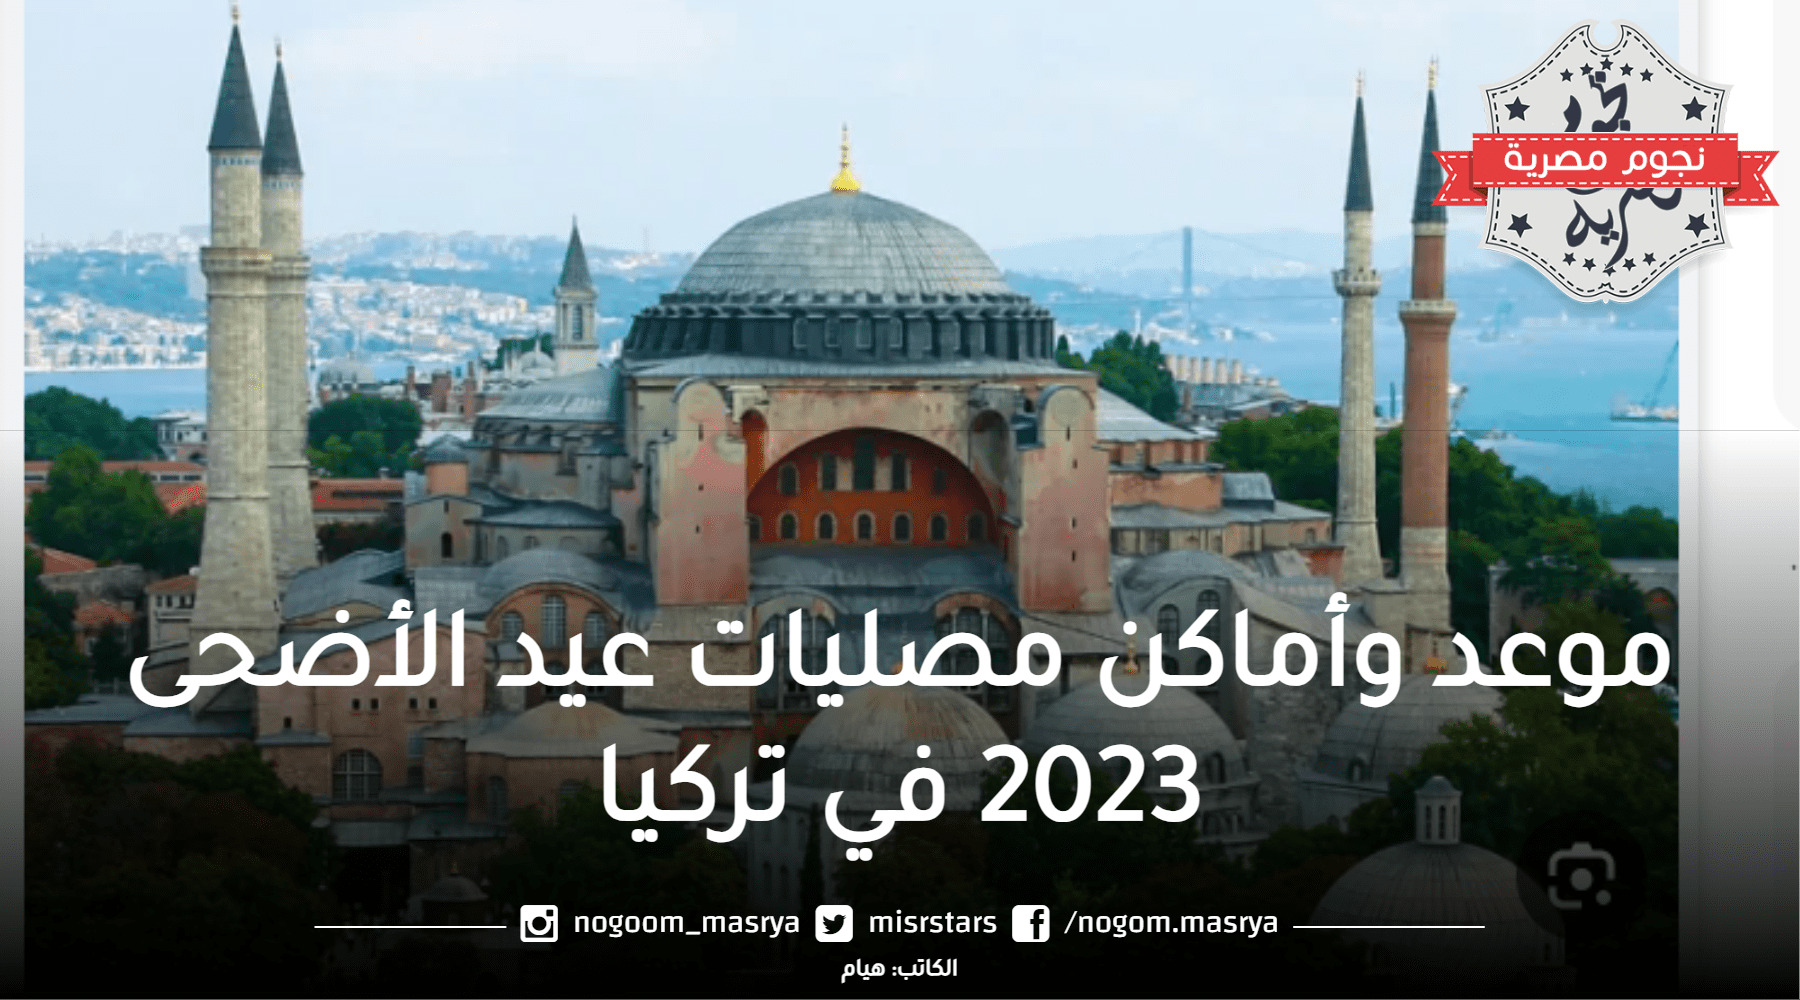 موعد وأماكن مصليات عيد الأضحى 2023 في تركيا